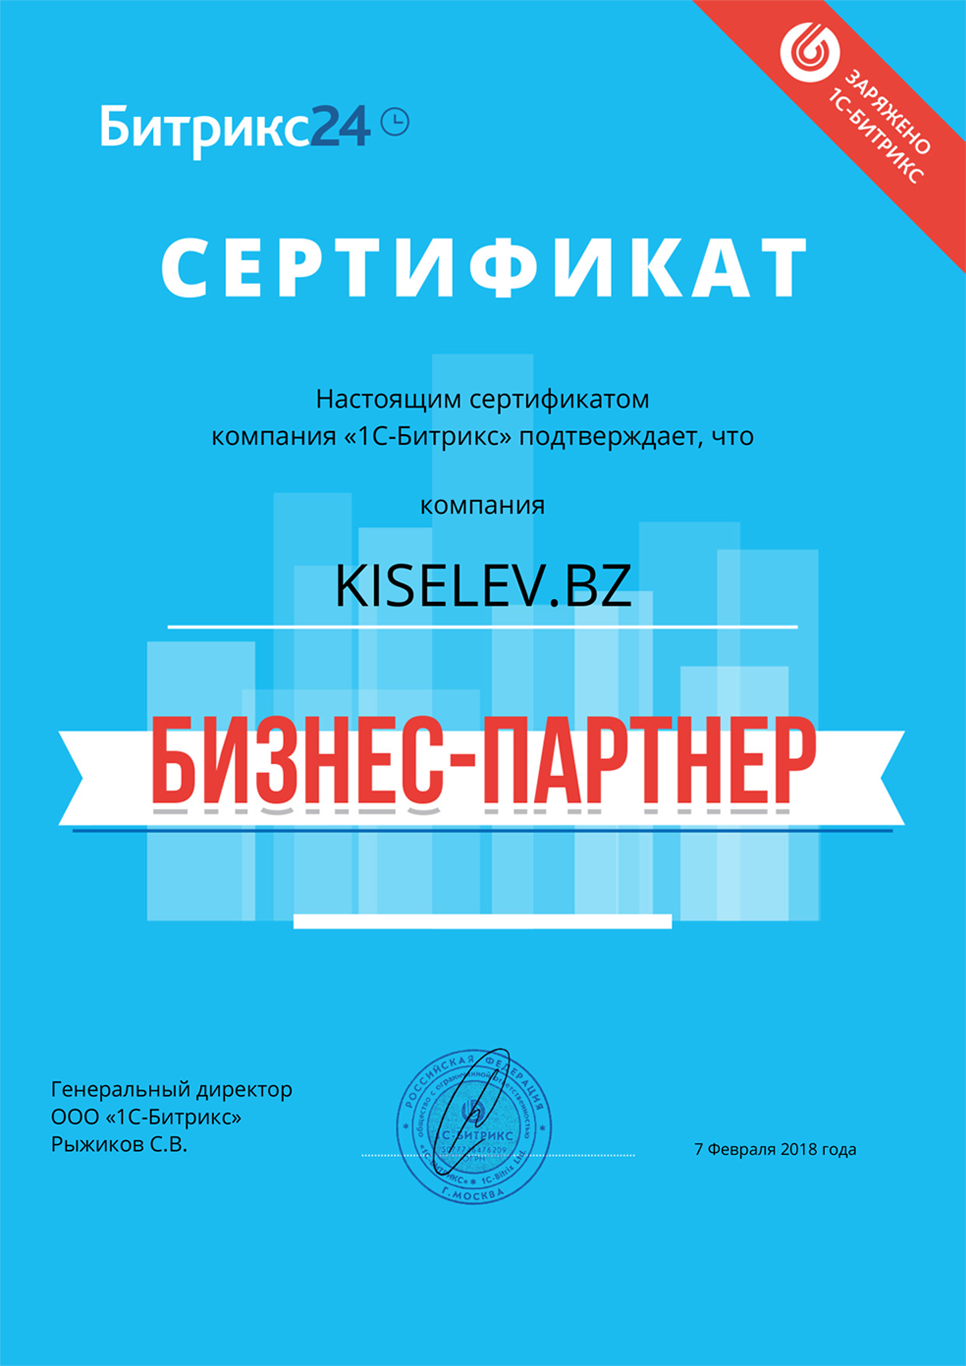 Сертификат партнёра по АМОСРМ в Чебоксарах